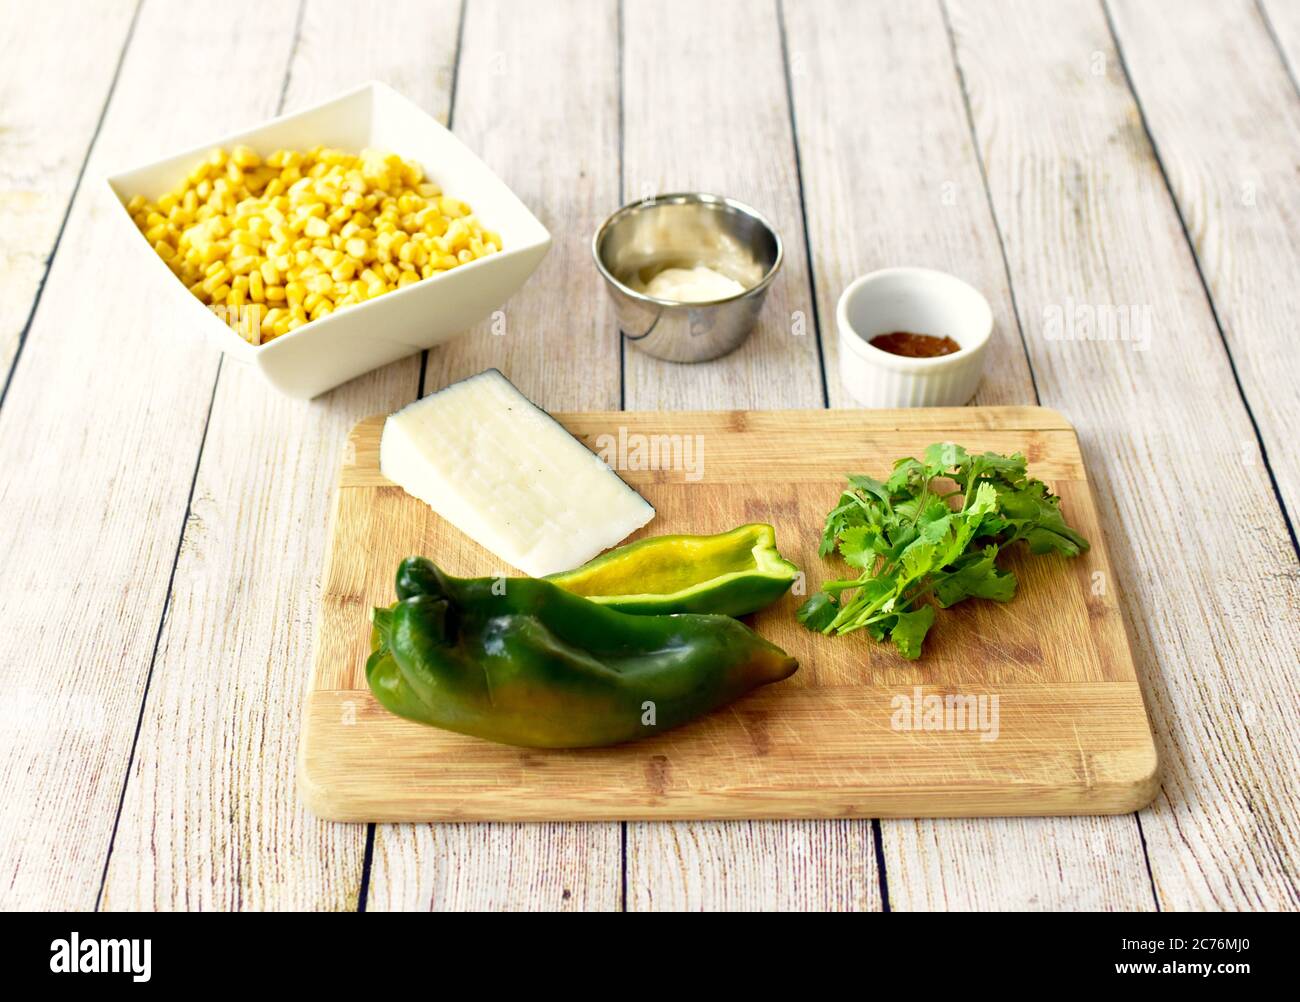 Ingrédients biologiques entiers prêts à préparer une salade de maïs mexicaine pour la fête de la famille Cinqo de Mayo en utilisant des aliments frais et sains Banque D'Images